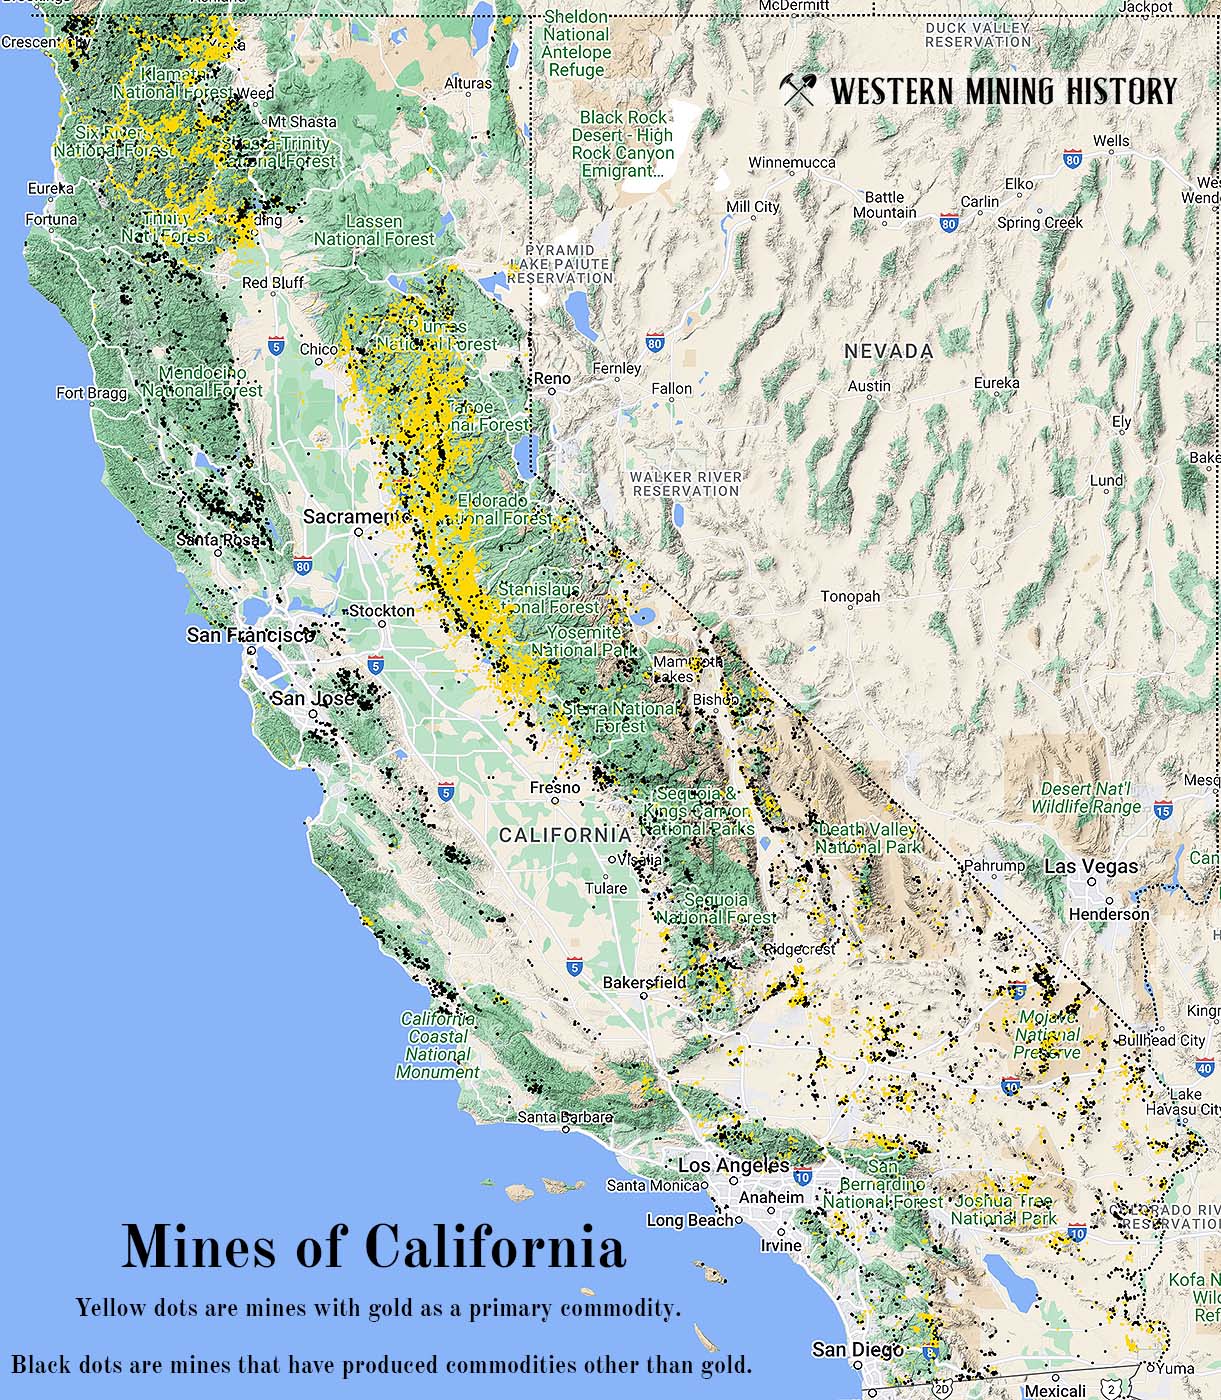 California mines